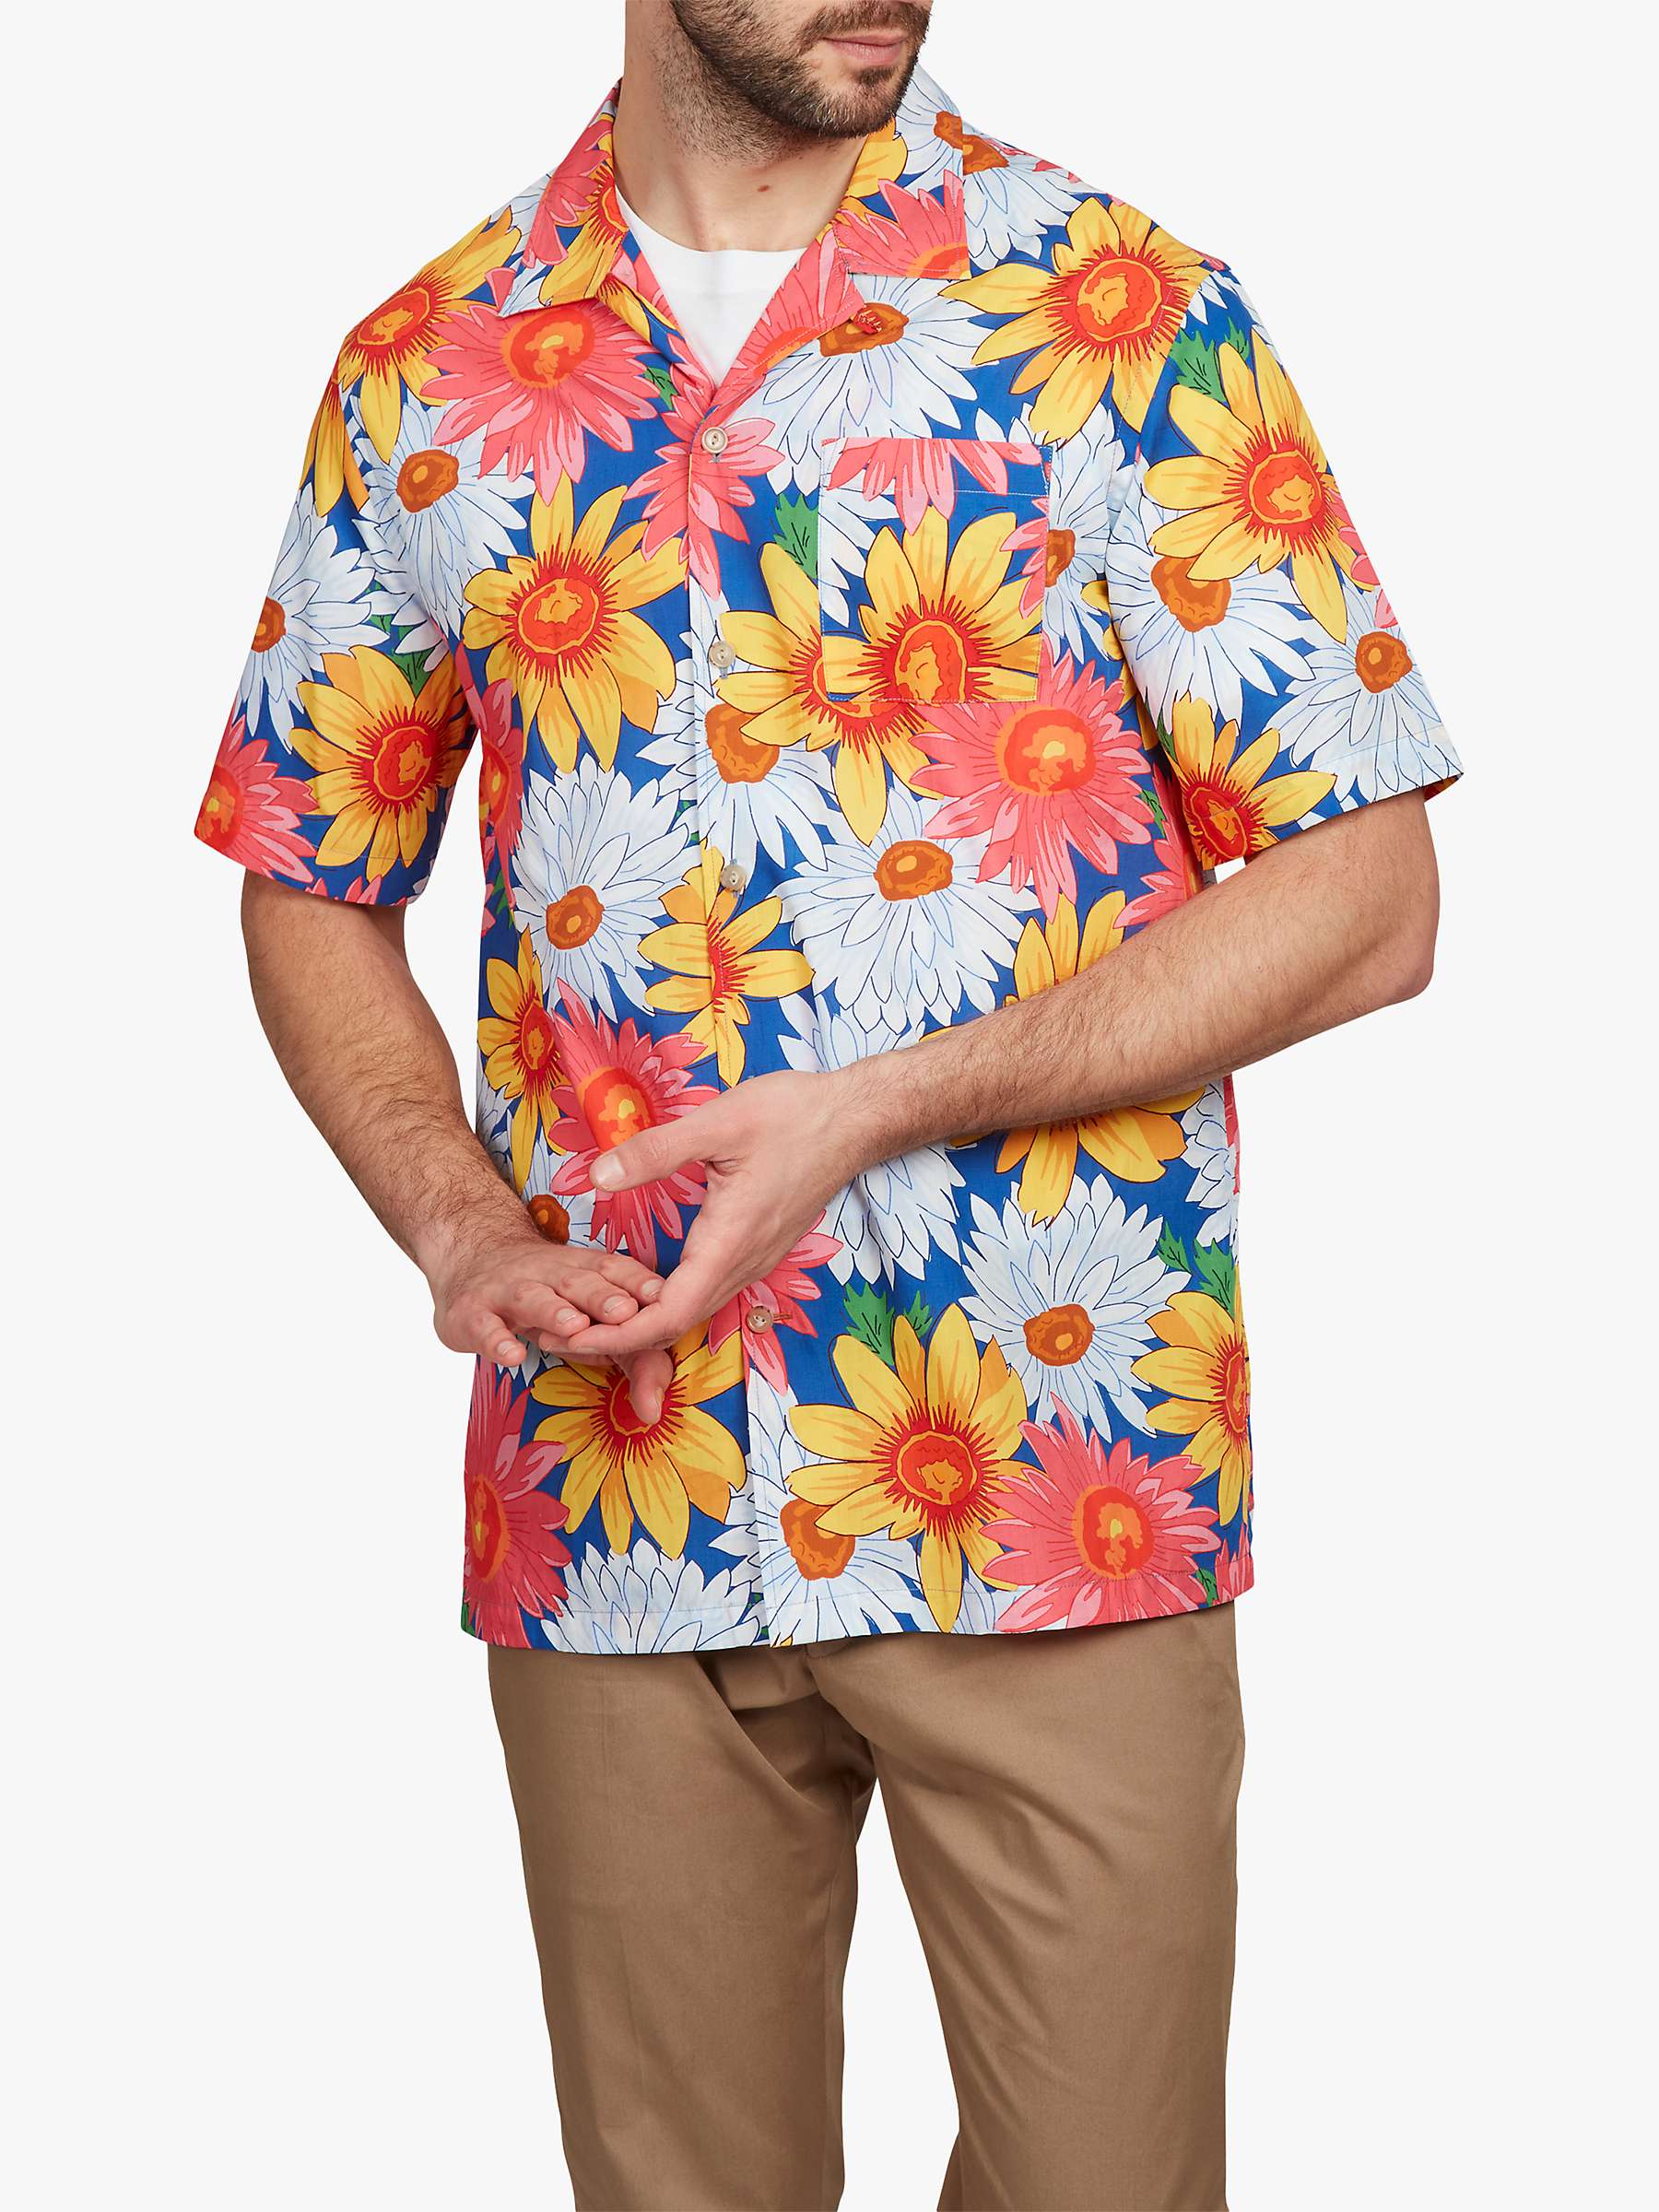 Buy Simon Carter Flower Short Sleeved Shirt, Multi Online at johnlewis.com